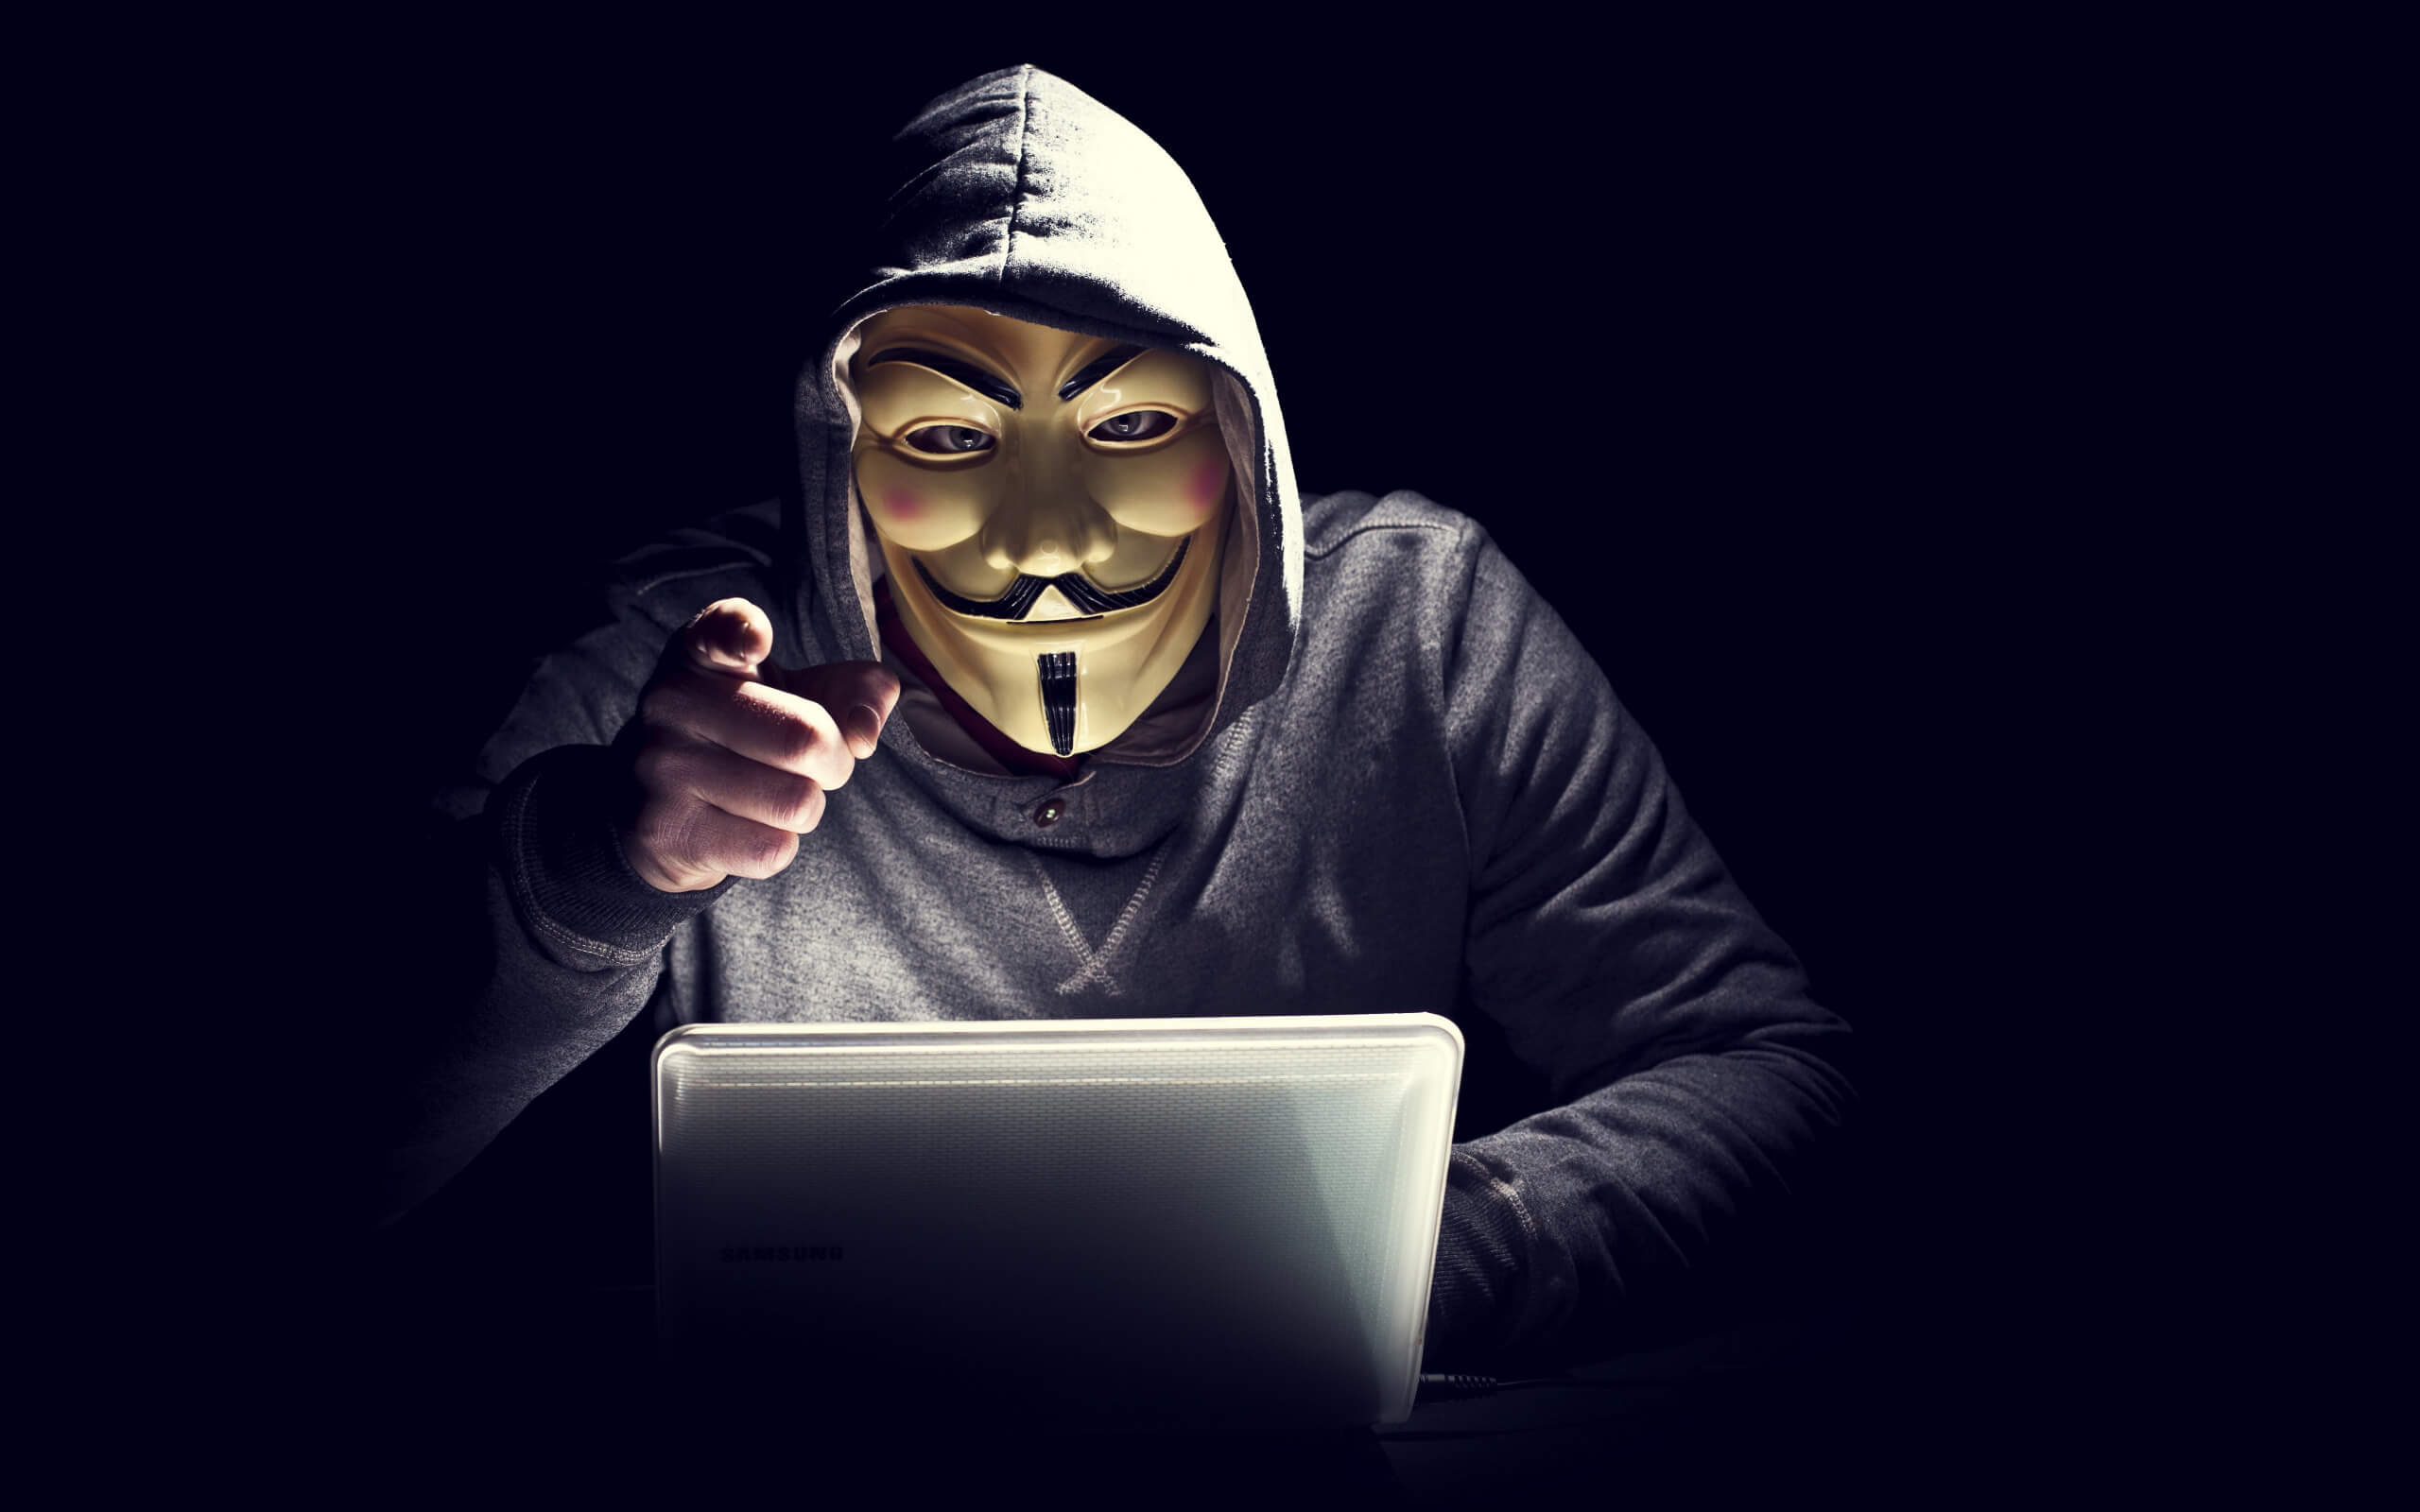 Хакерская группировка Anonymous объявила кибервойну российскому правительству